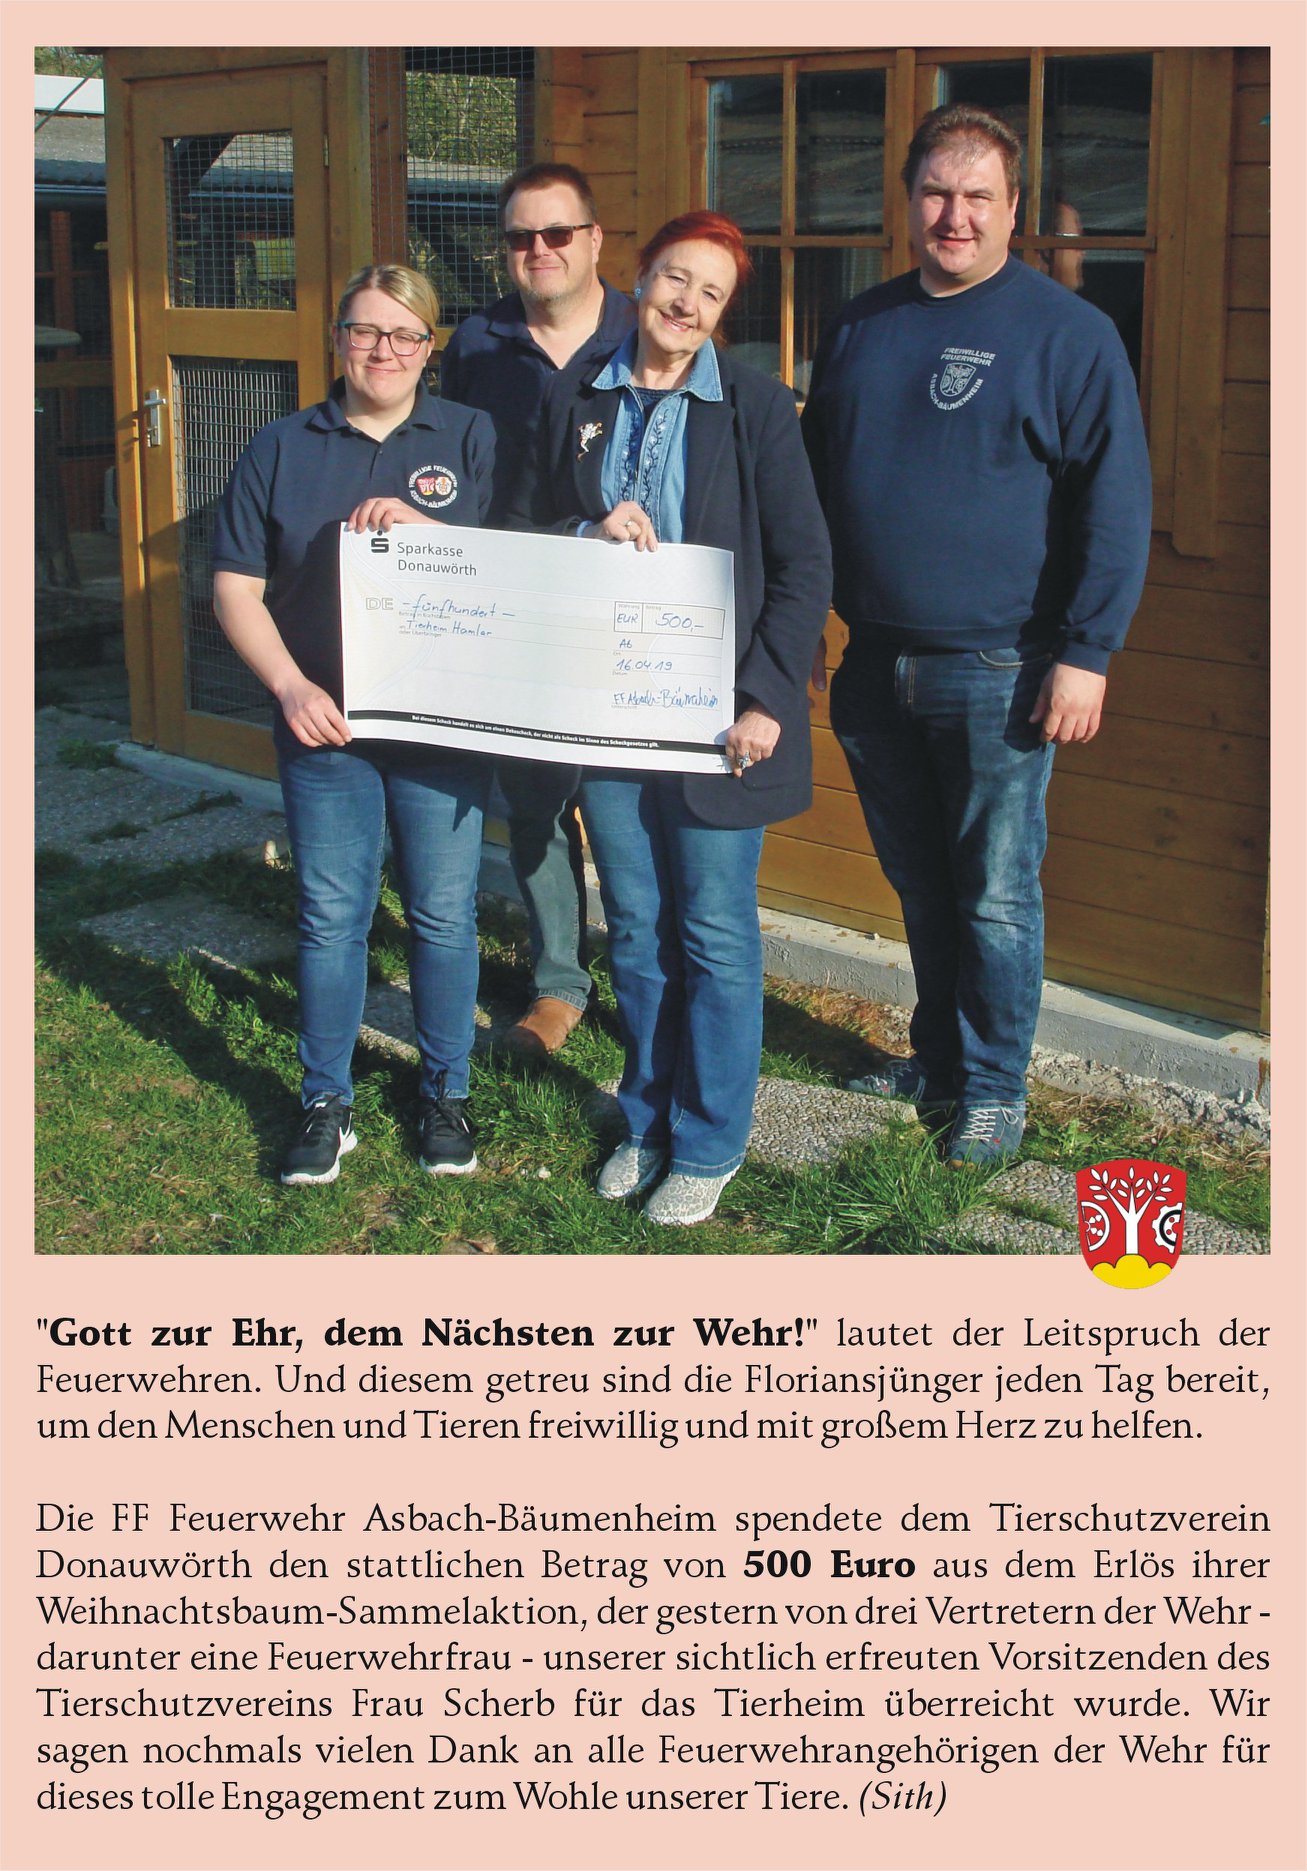 Spende Feuerwehr Asbach-Bäumenheim